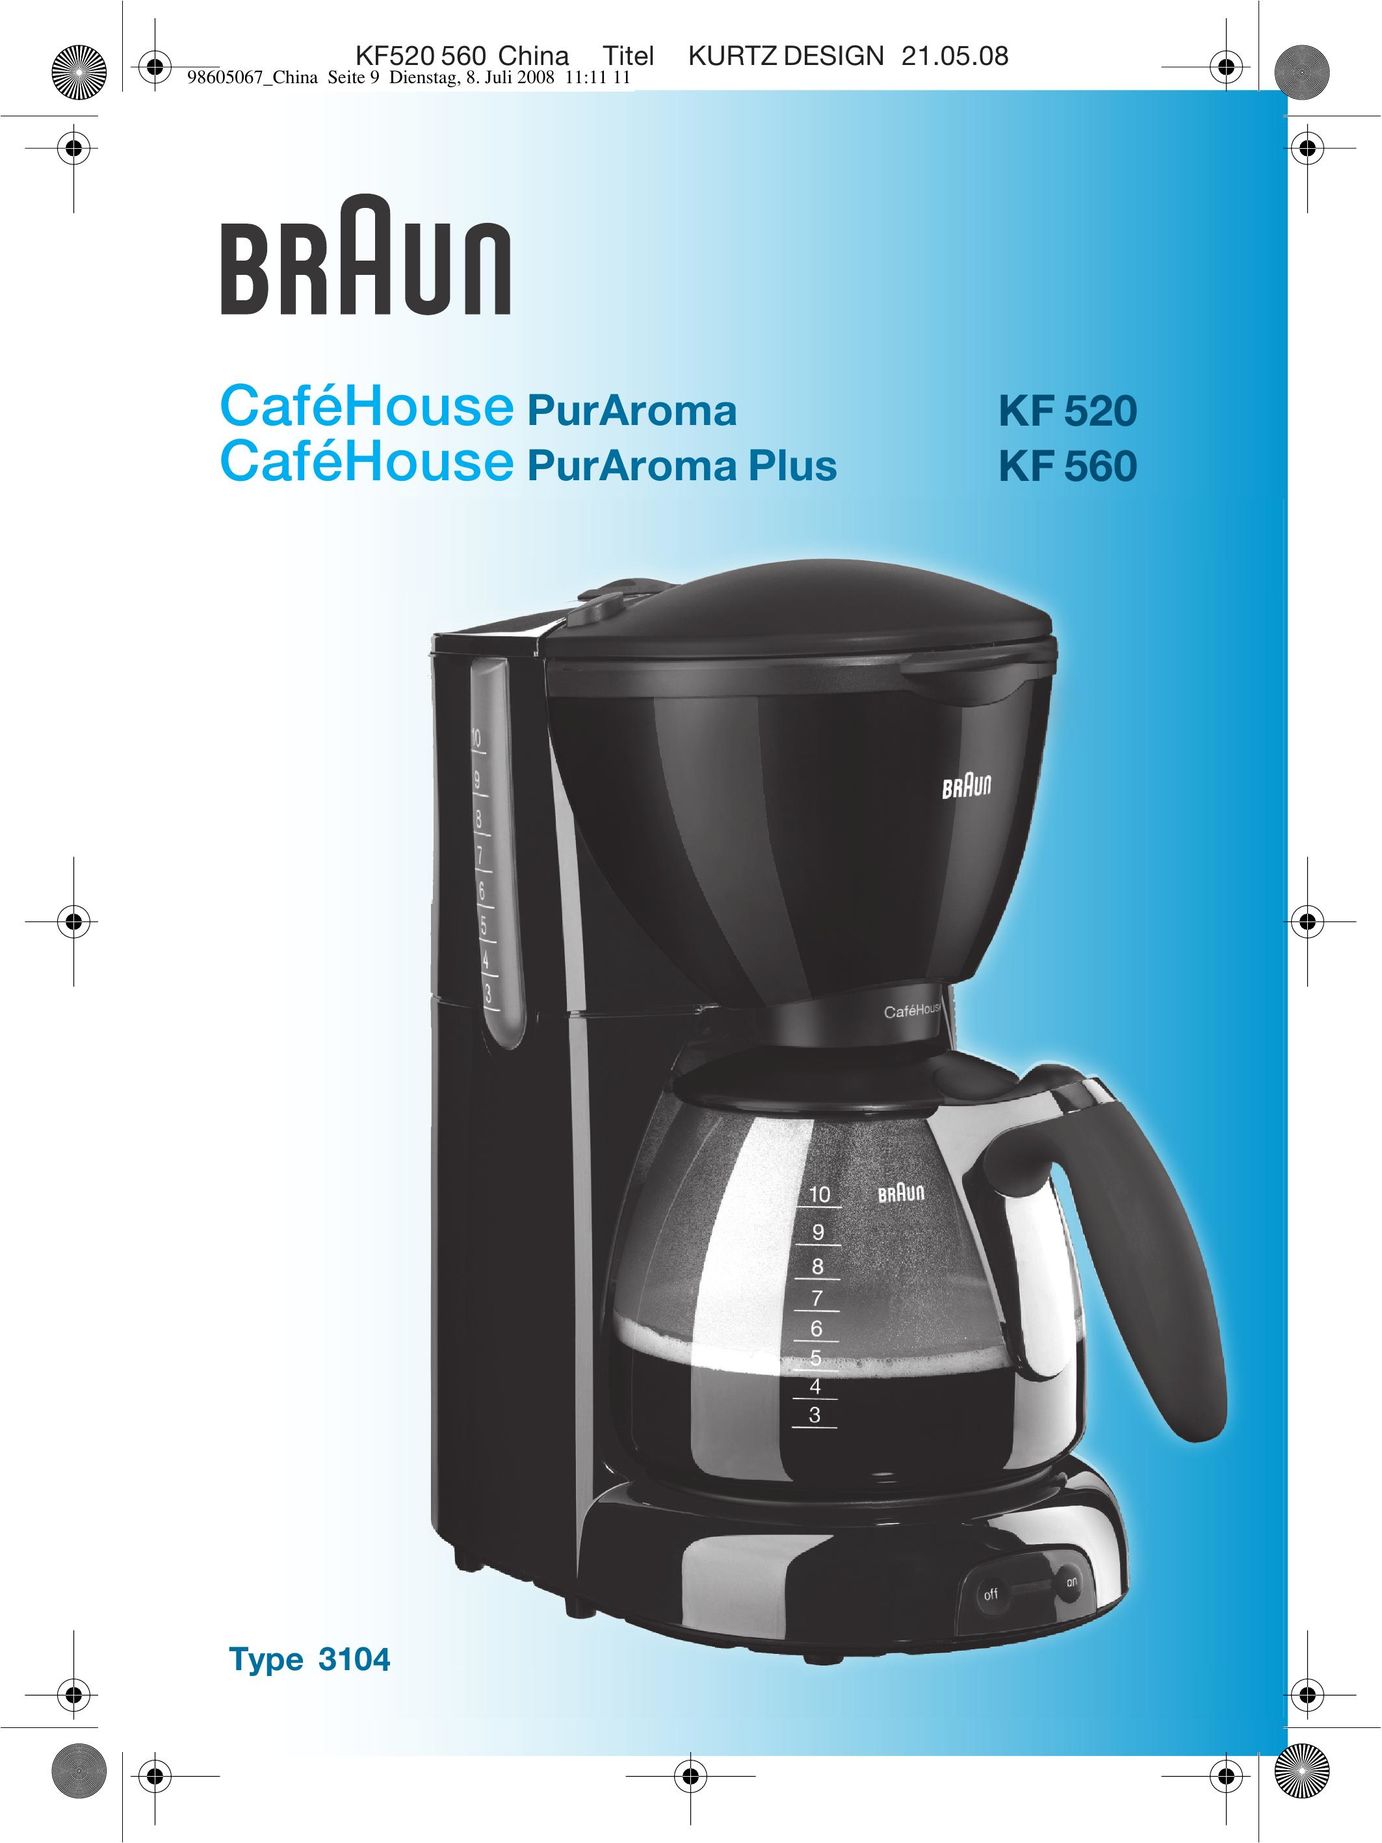 Braun CafHouse PurAroma Plus KF 560 Coffeemaker User Manual